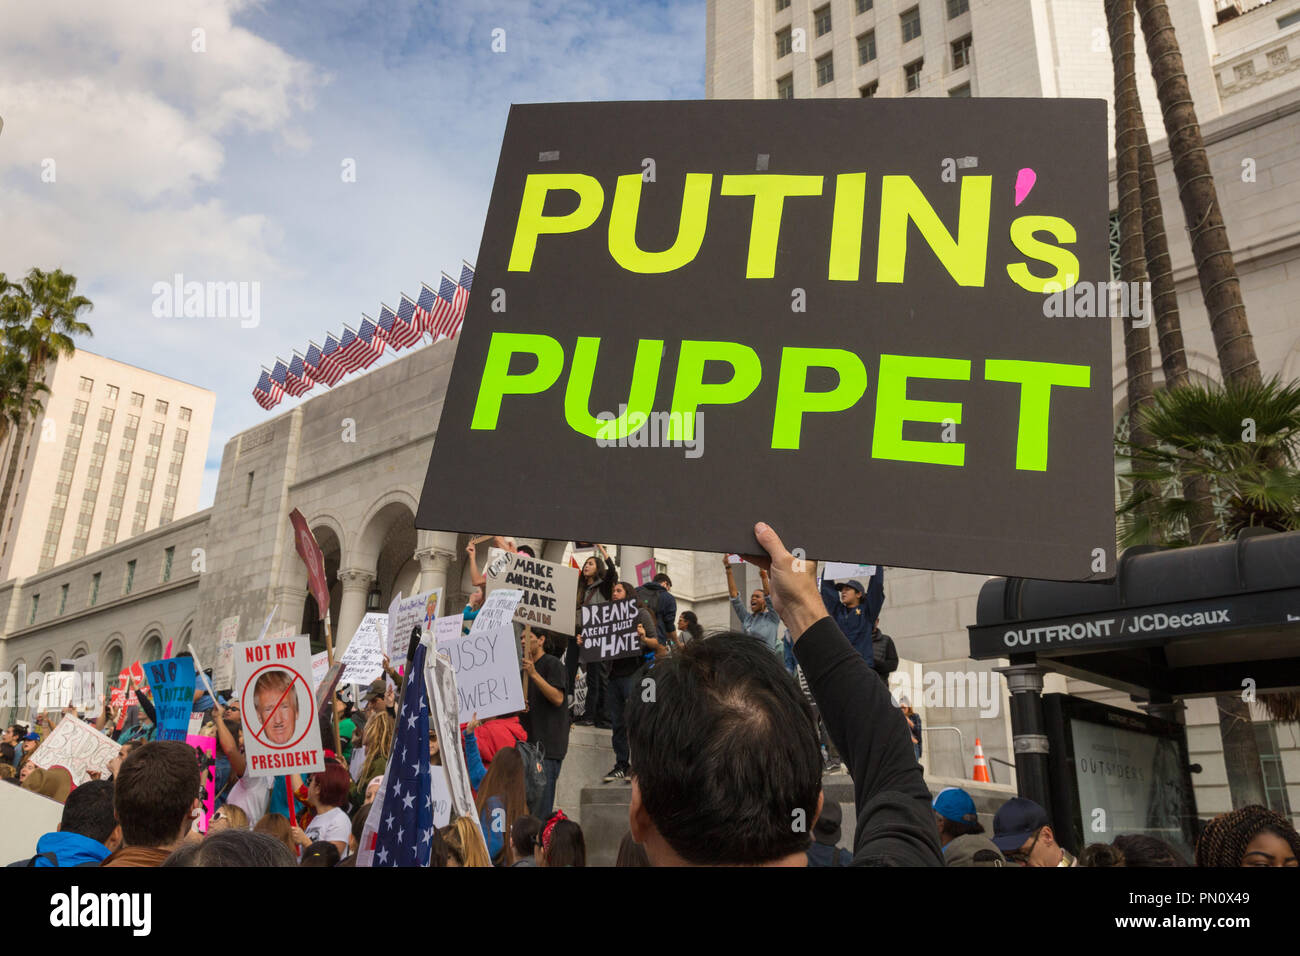 Schild mit der Aufschrift "Putin's Marionette" von Anti-Trump demonstrant am Los Angeles City Hall, 2017. Stockfoto